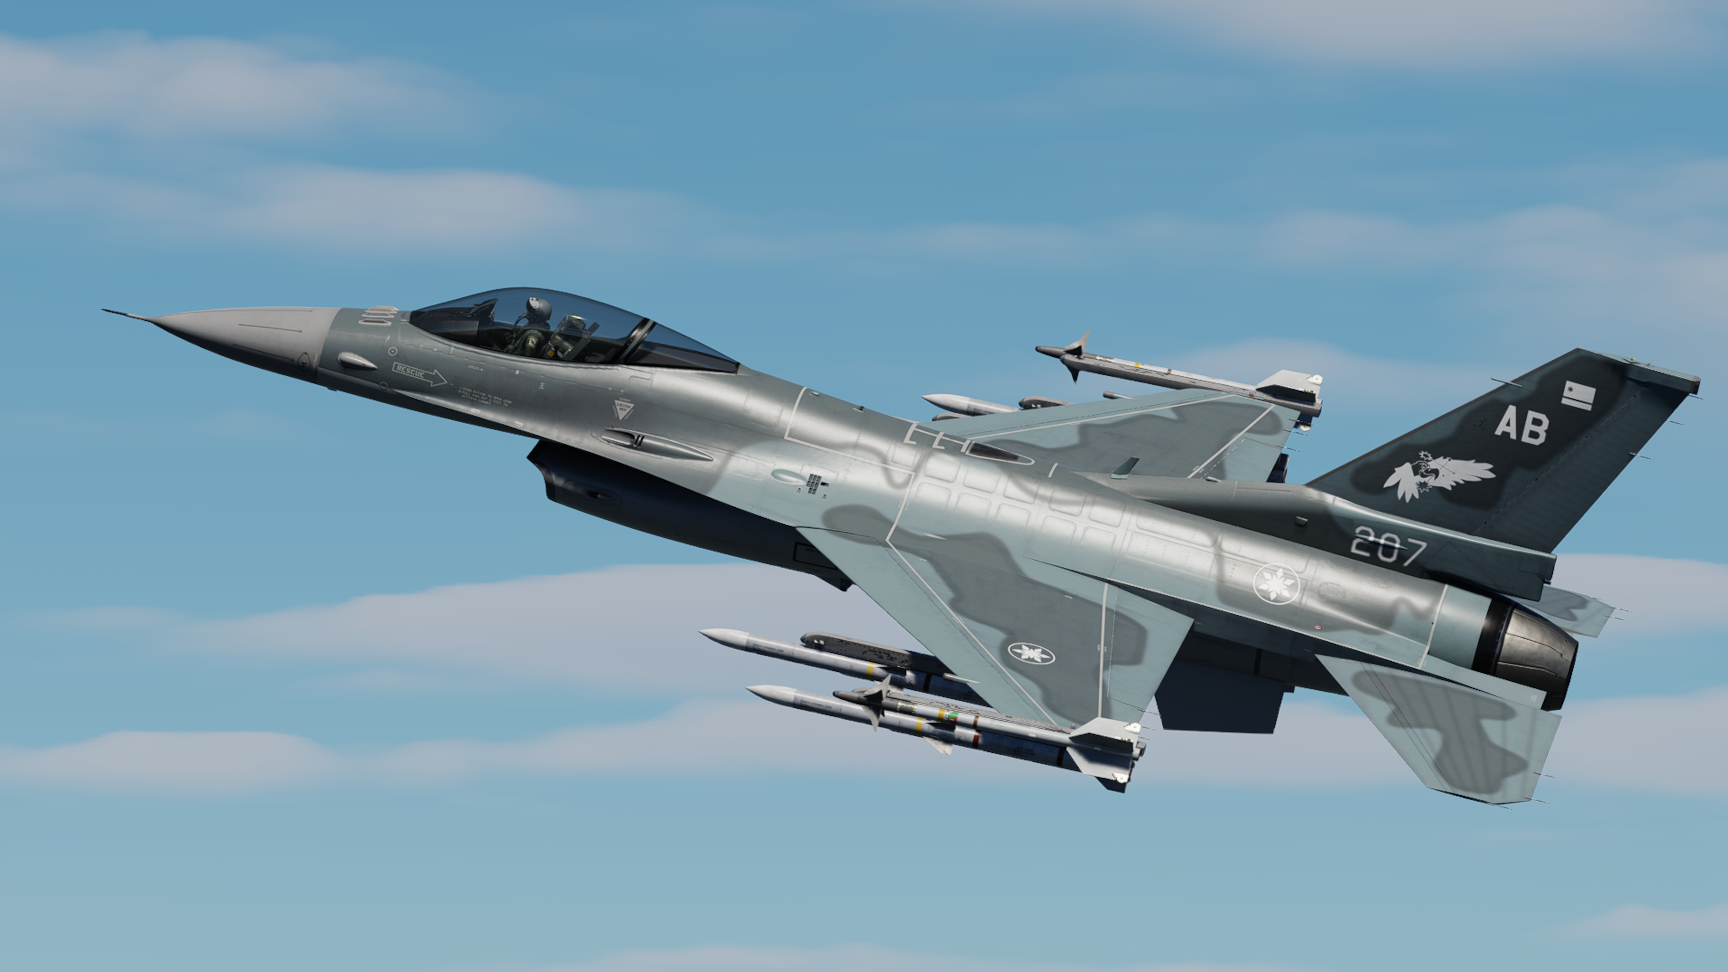 Ace Combat X - Aurelian Air Force 207th TFS "Gryphus" F-16C Blue Camo